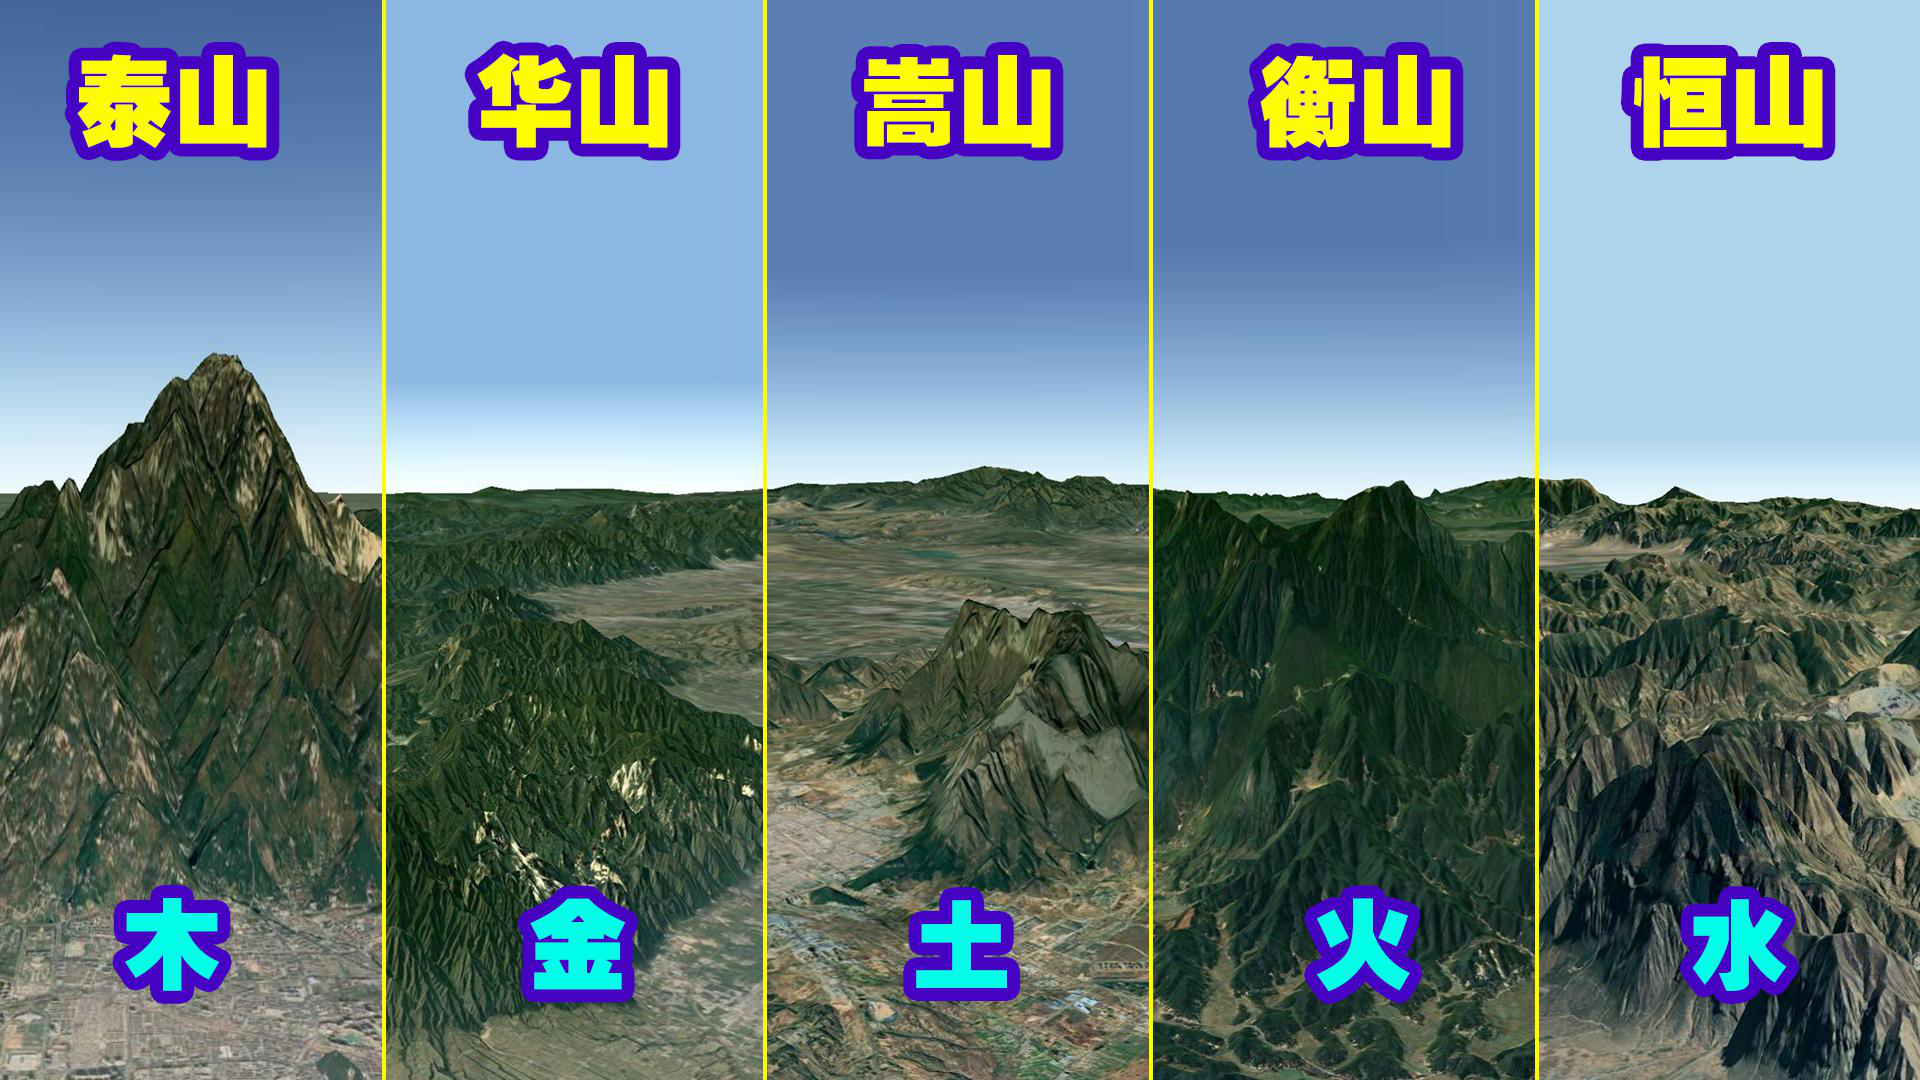 中国五岳和五行之间的关系是什么?用3d地图看完五岳山全地形!